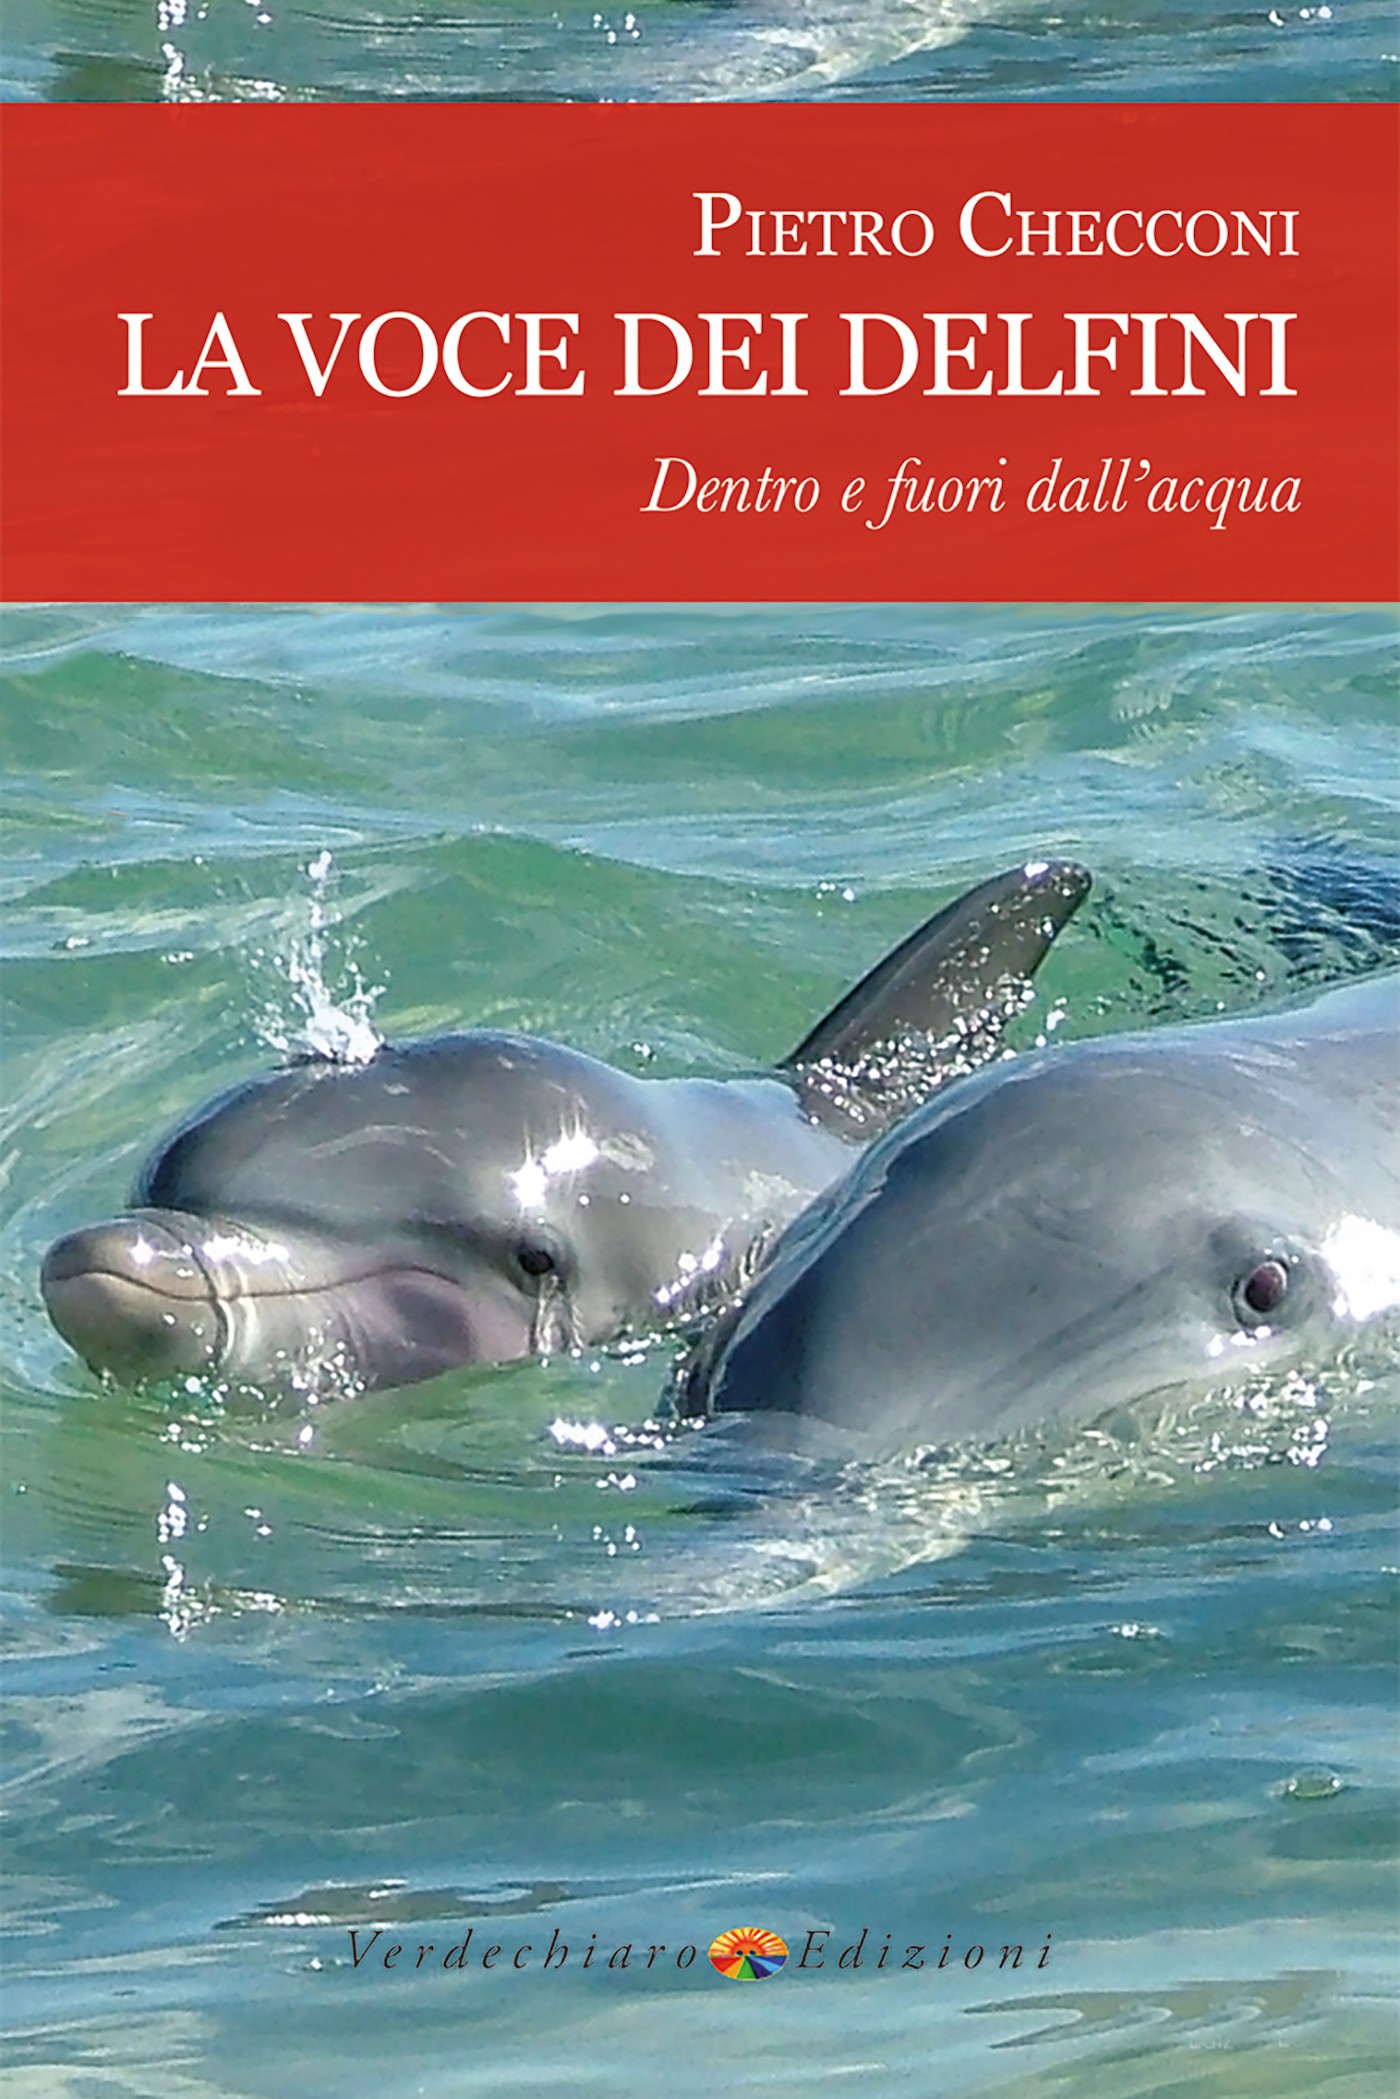 La voce dei delfini, dentro e fuori dall'acqua - Librerie.coop